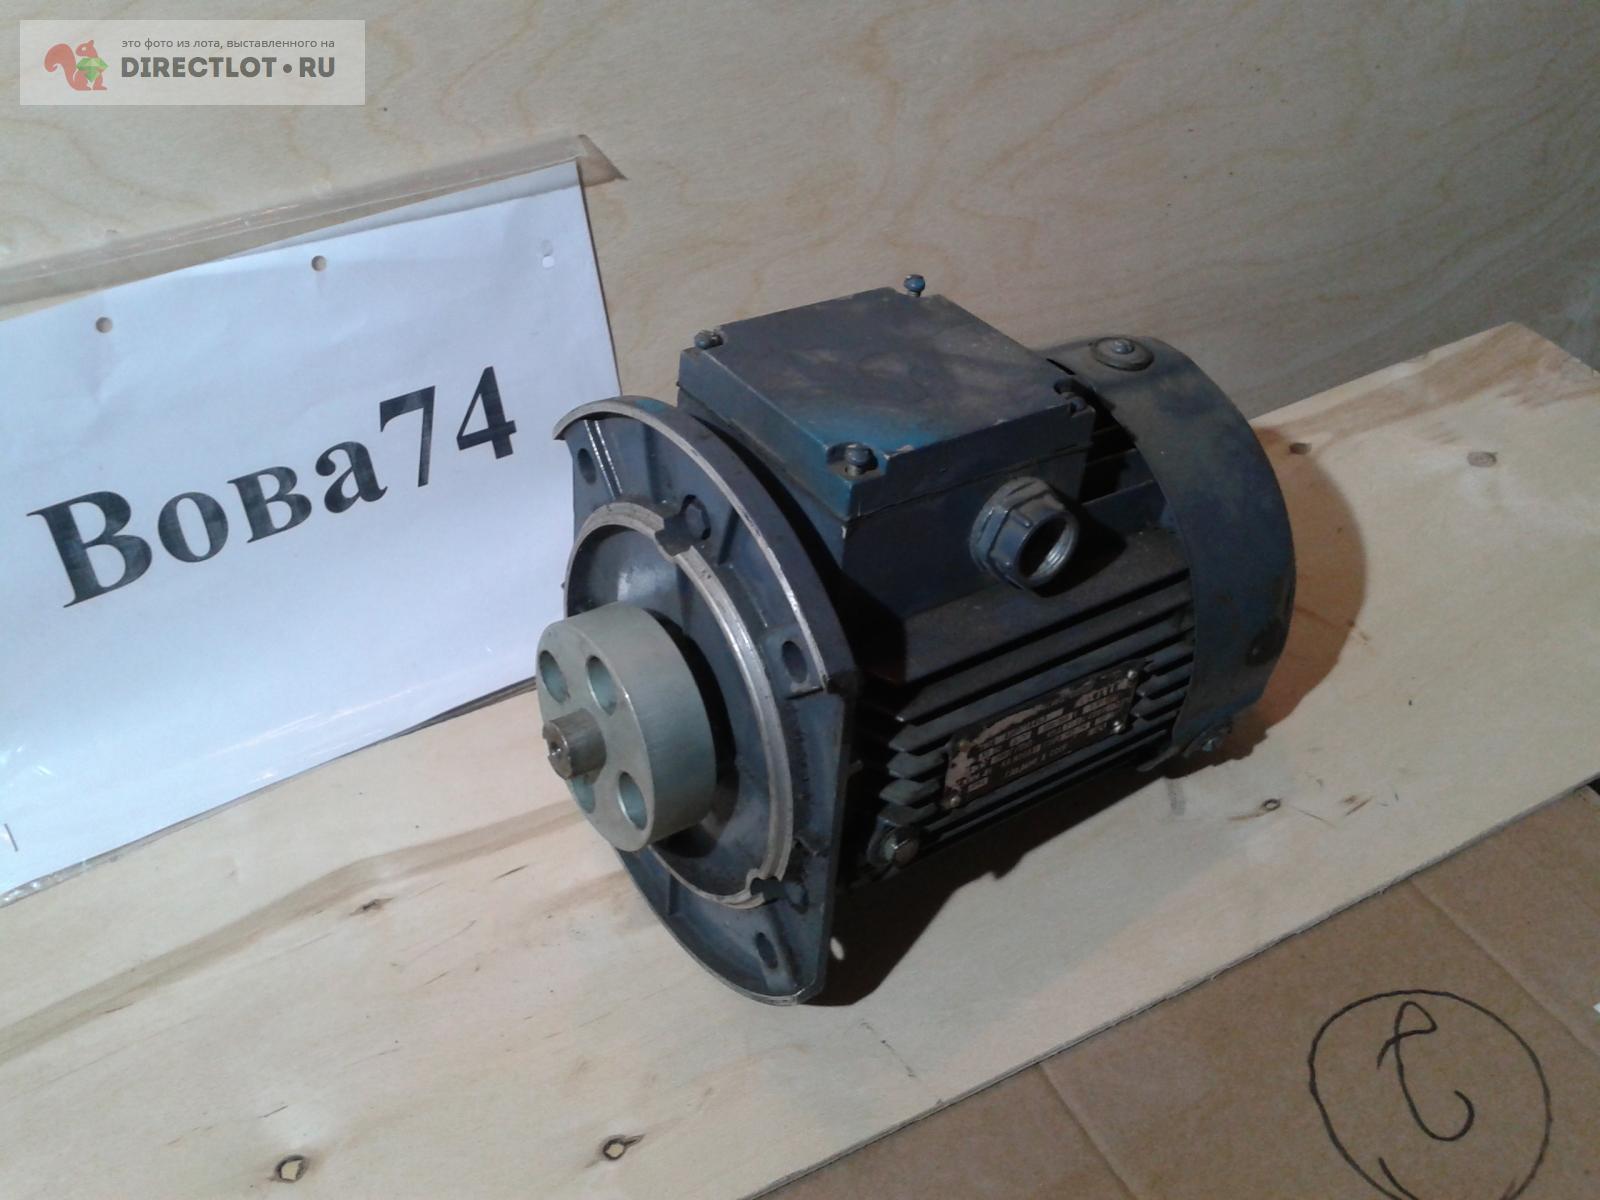 электродвигатель 0,5 кВт  в Челябинске цена 2500 Р на DIRECTLOT .